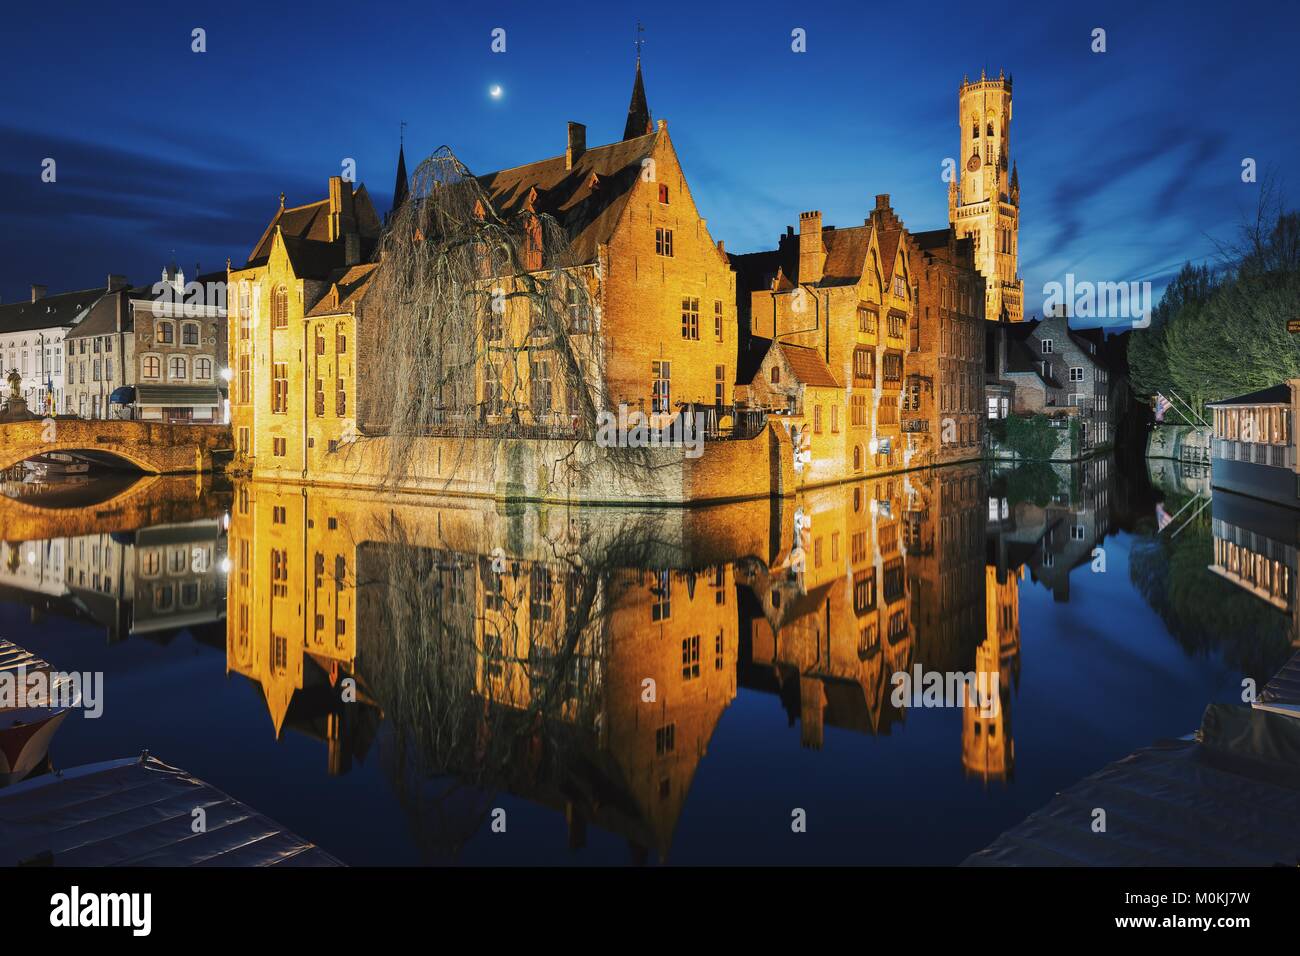 Visualizzazione classica del centro storico della città di Brugge con il famoso Rozenhoedkaai accesa durante il magico crepuscolo, Fiandre, in Belgio Foto Stock